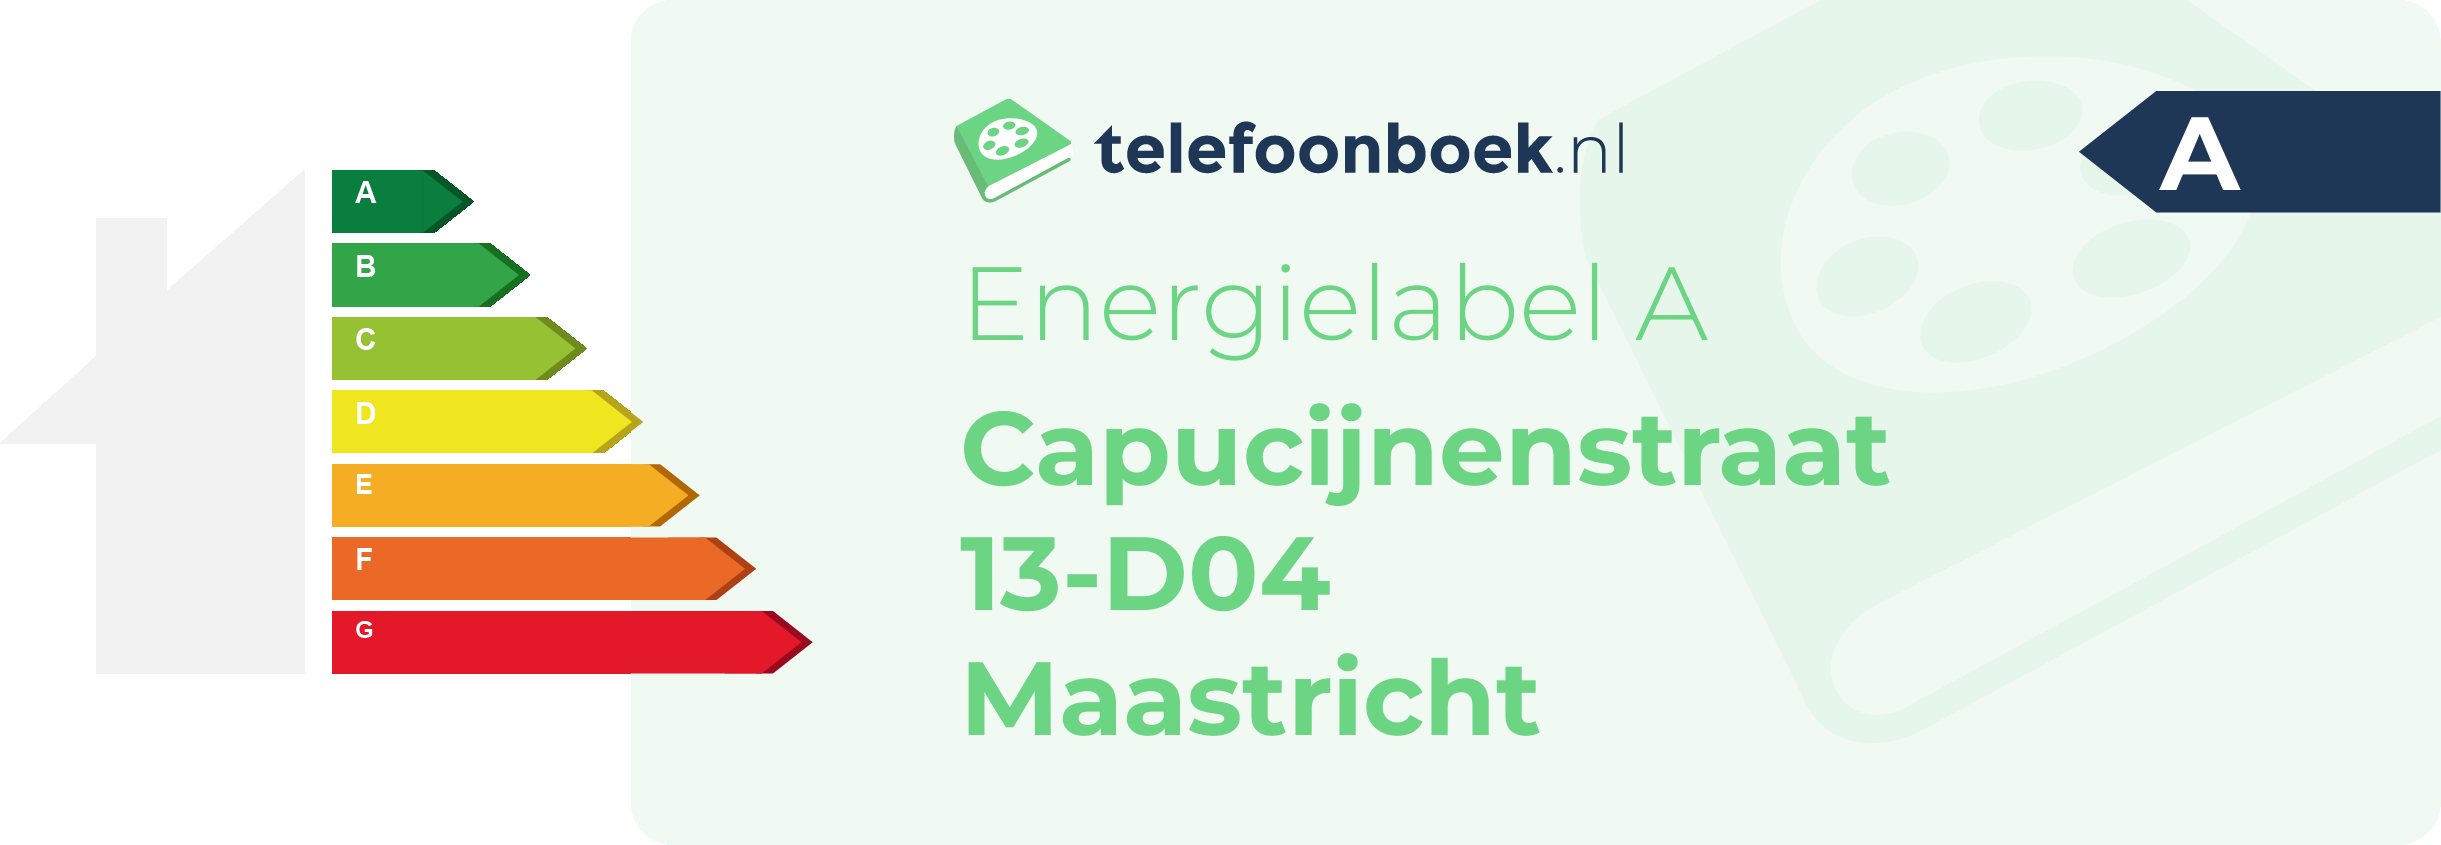 Energielabel Capucijnenstraat 13-D04 Maastricht